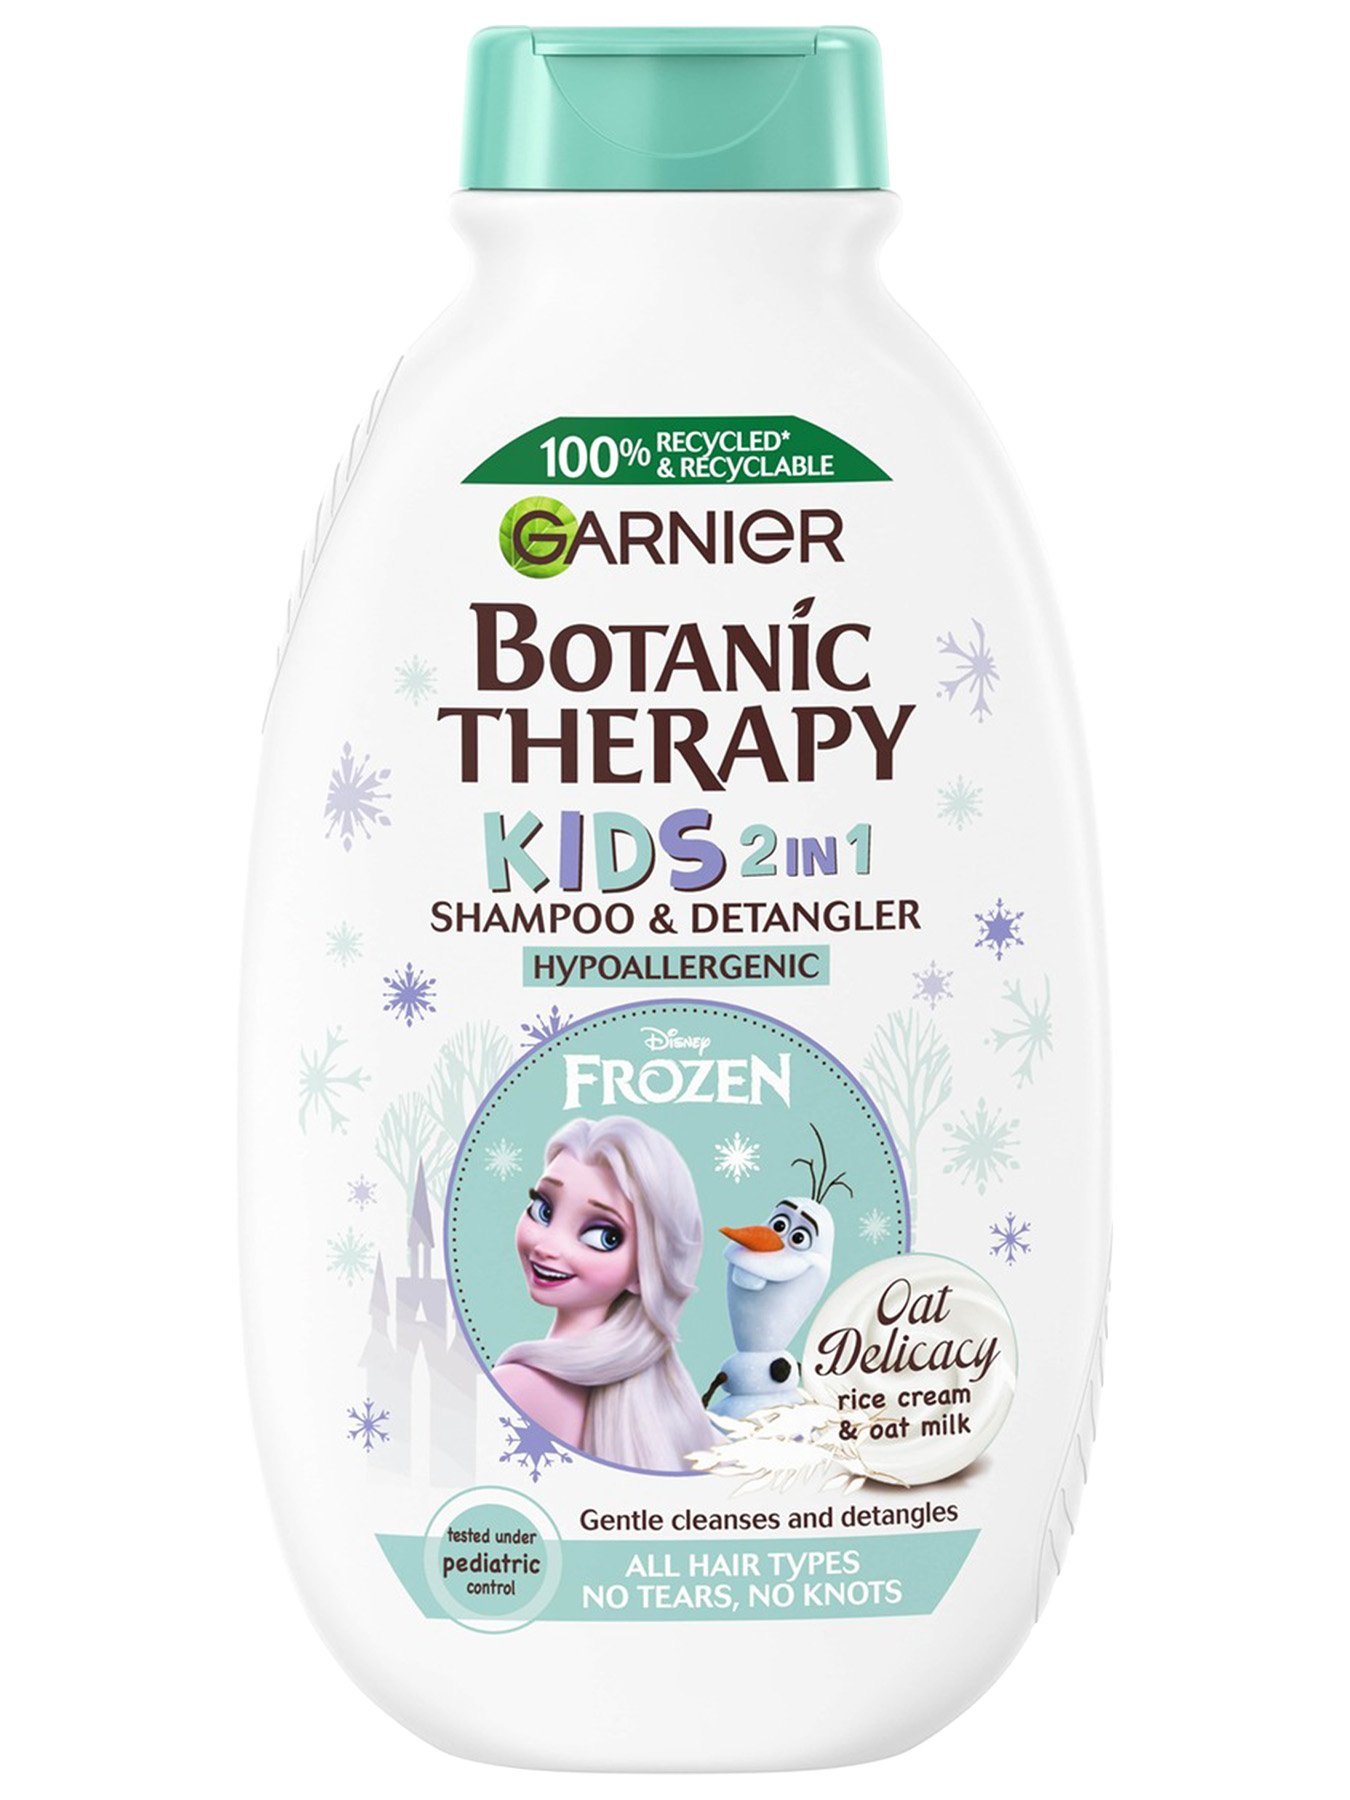 Garnier Botanic Therapy Kids 2IN1 Oat šampon i regenerator